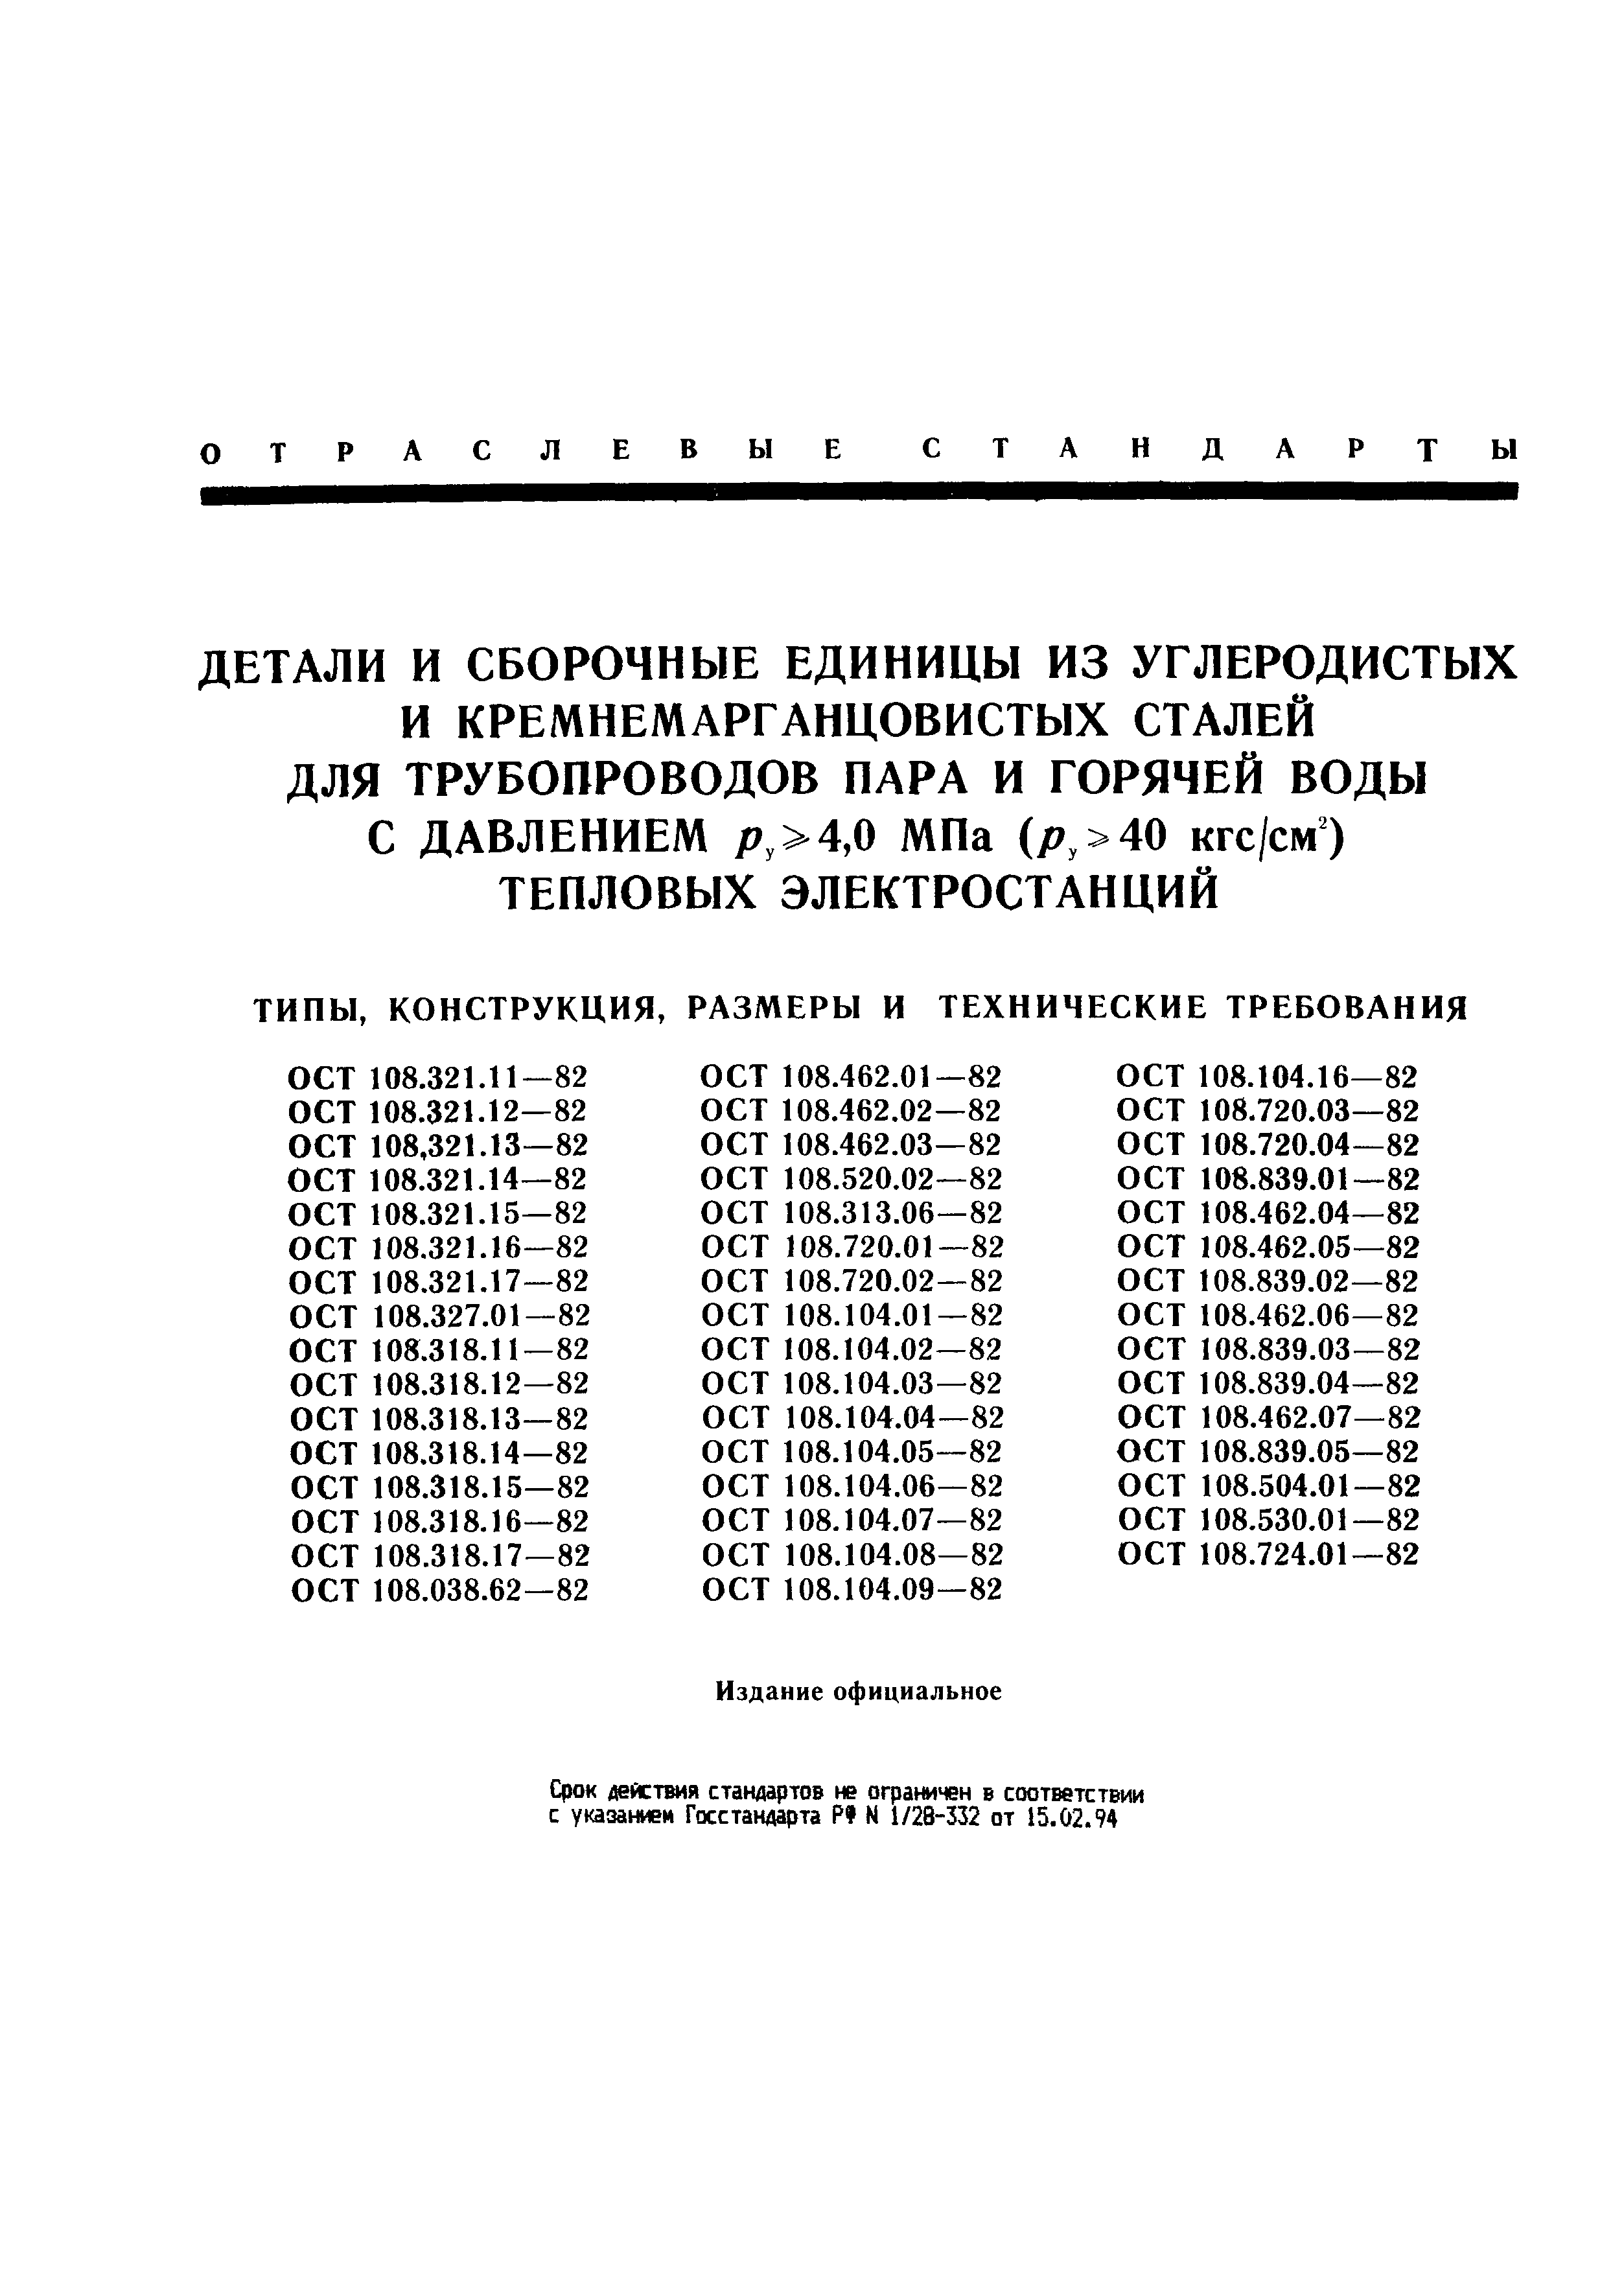 ОСТ 108.462.06-82